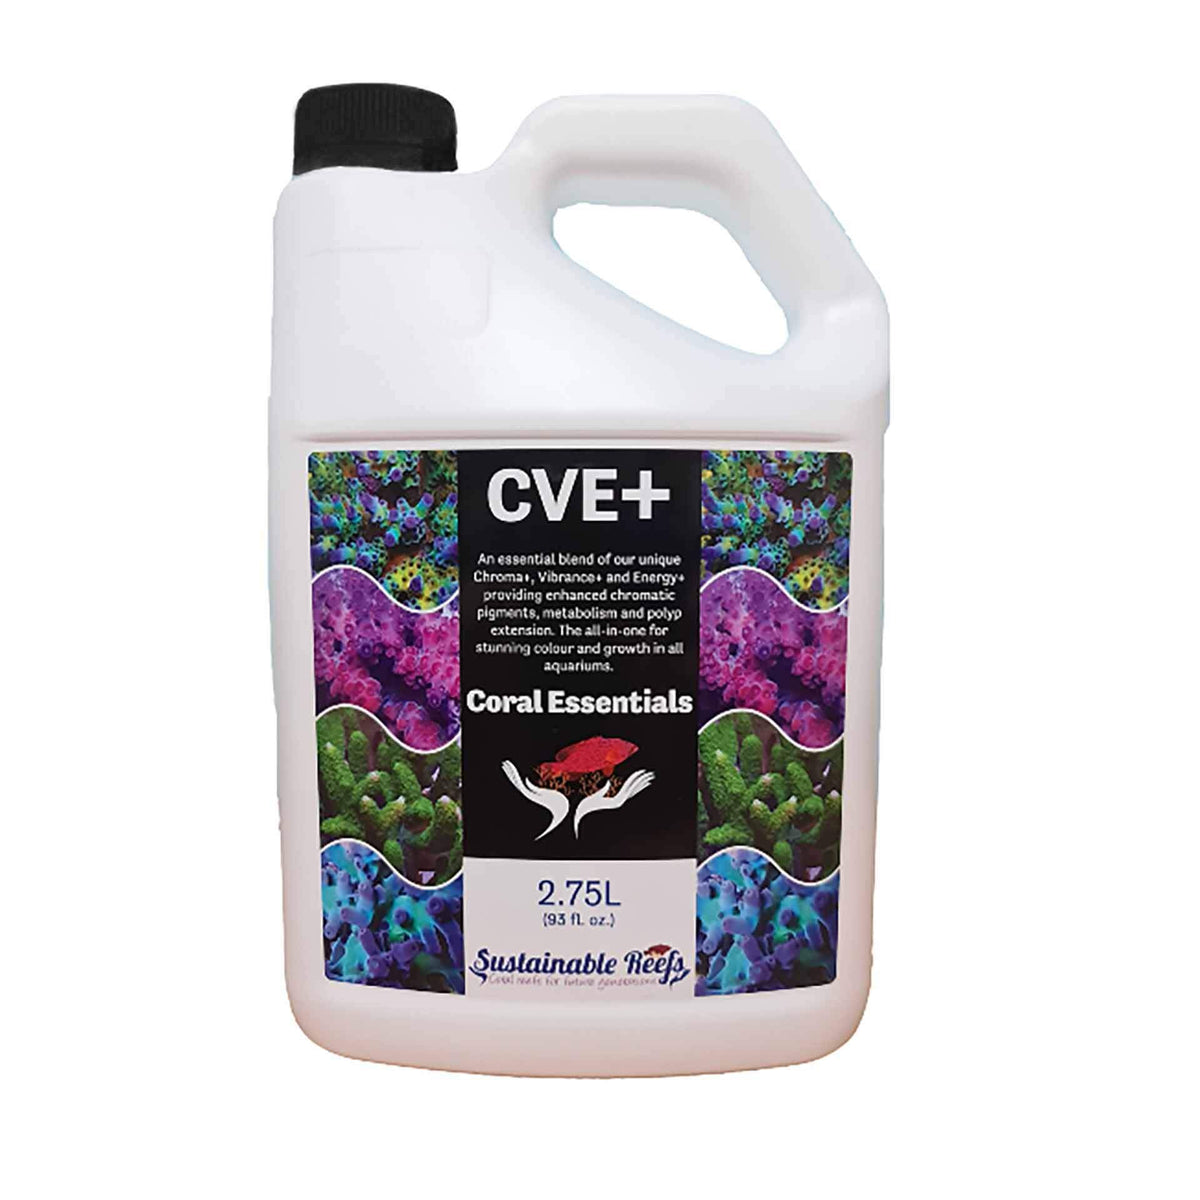 Coral Essentials CVE+ 2.75L